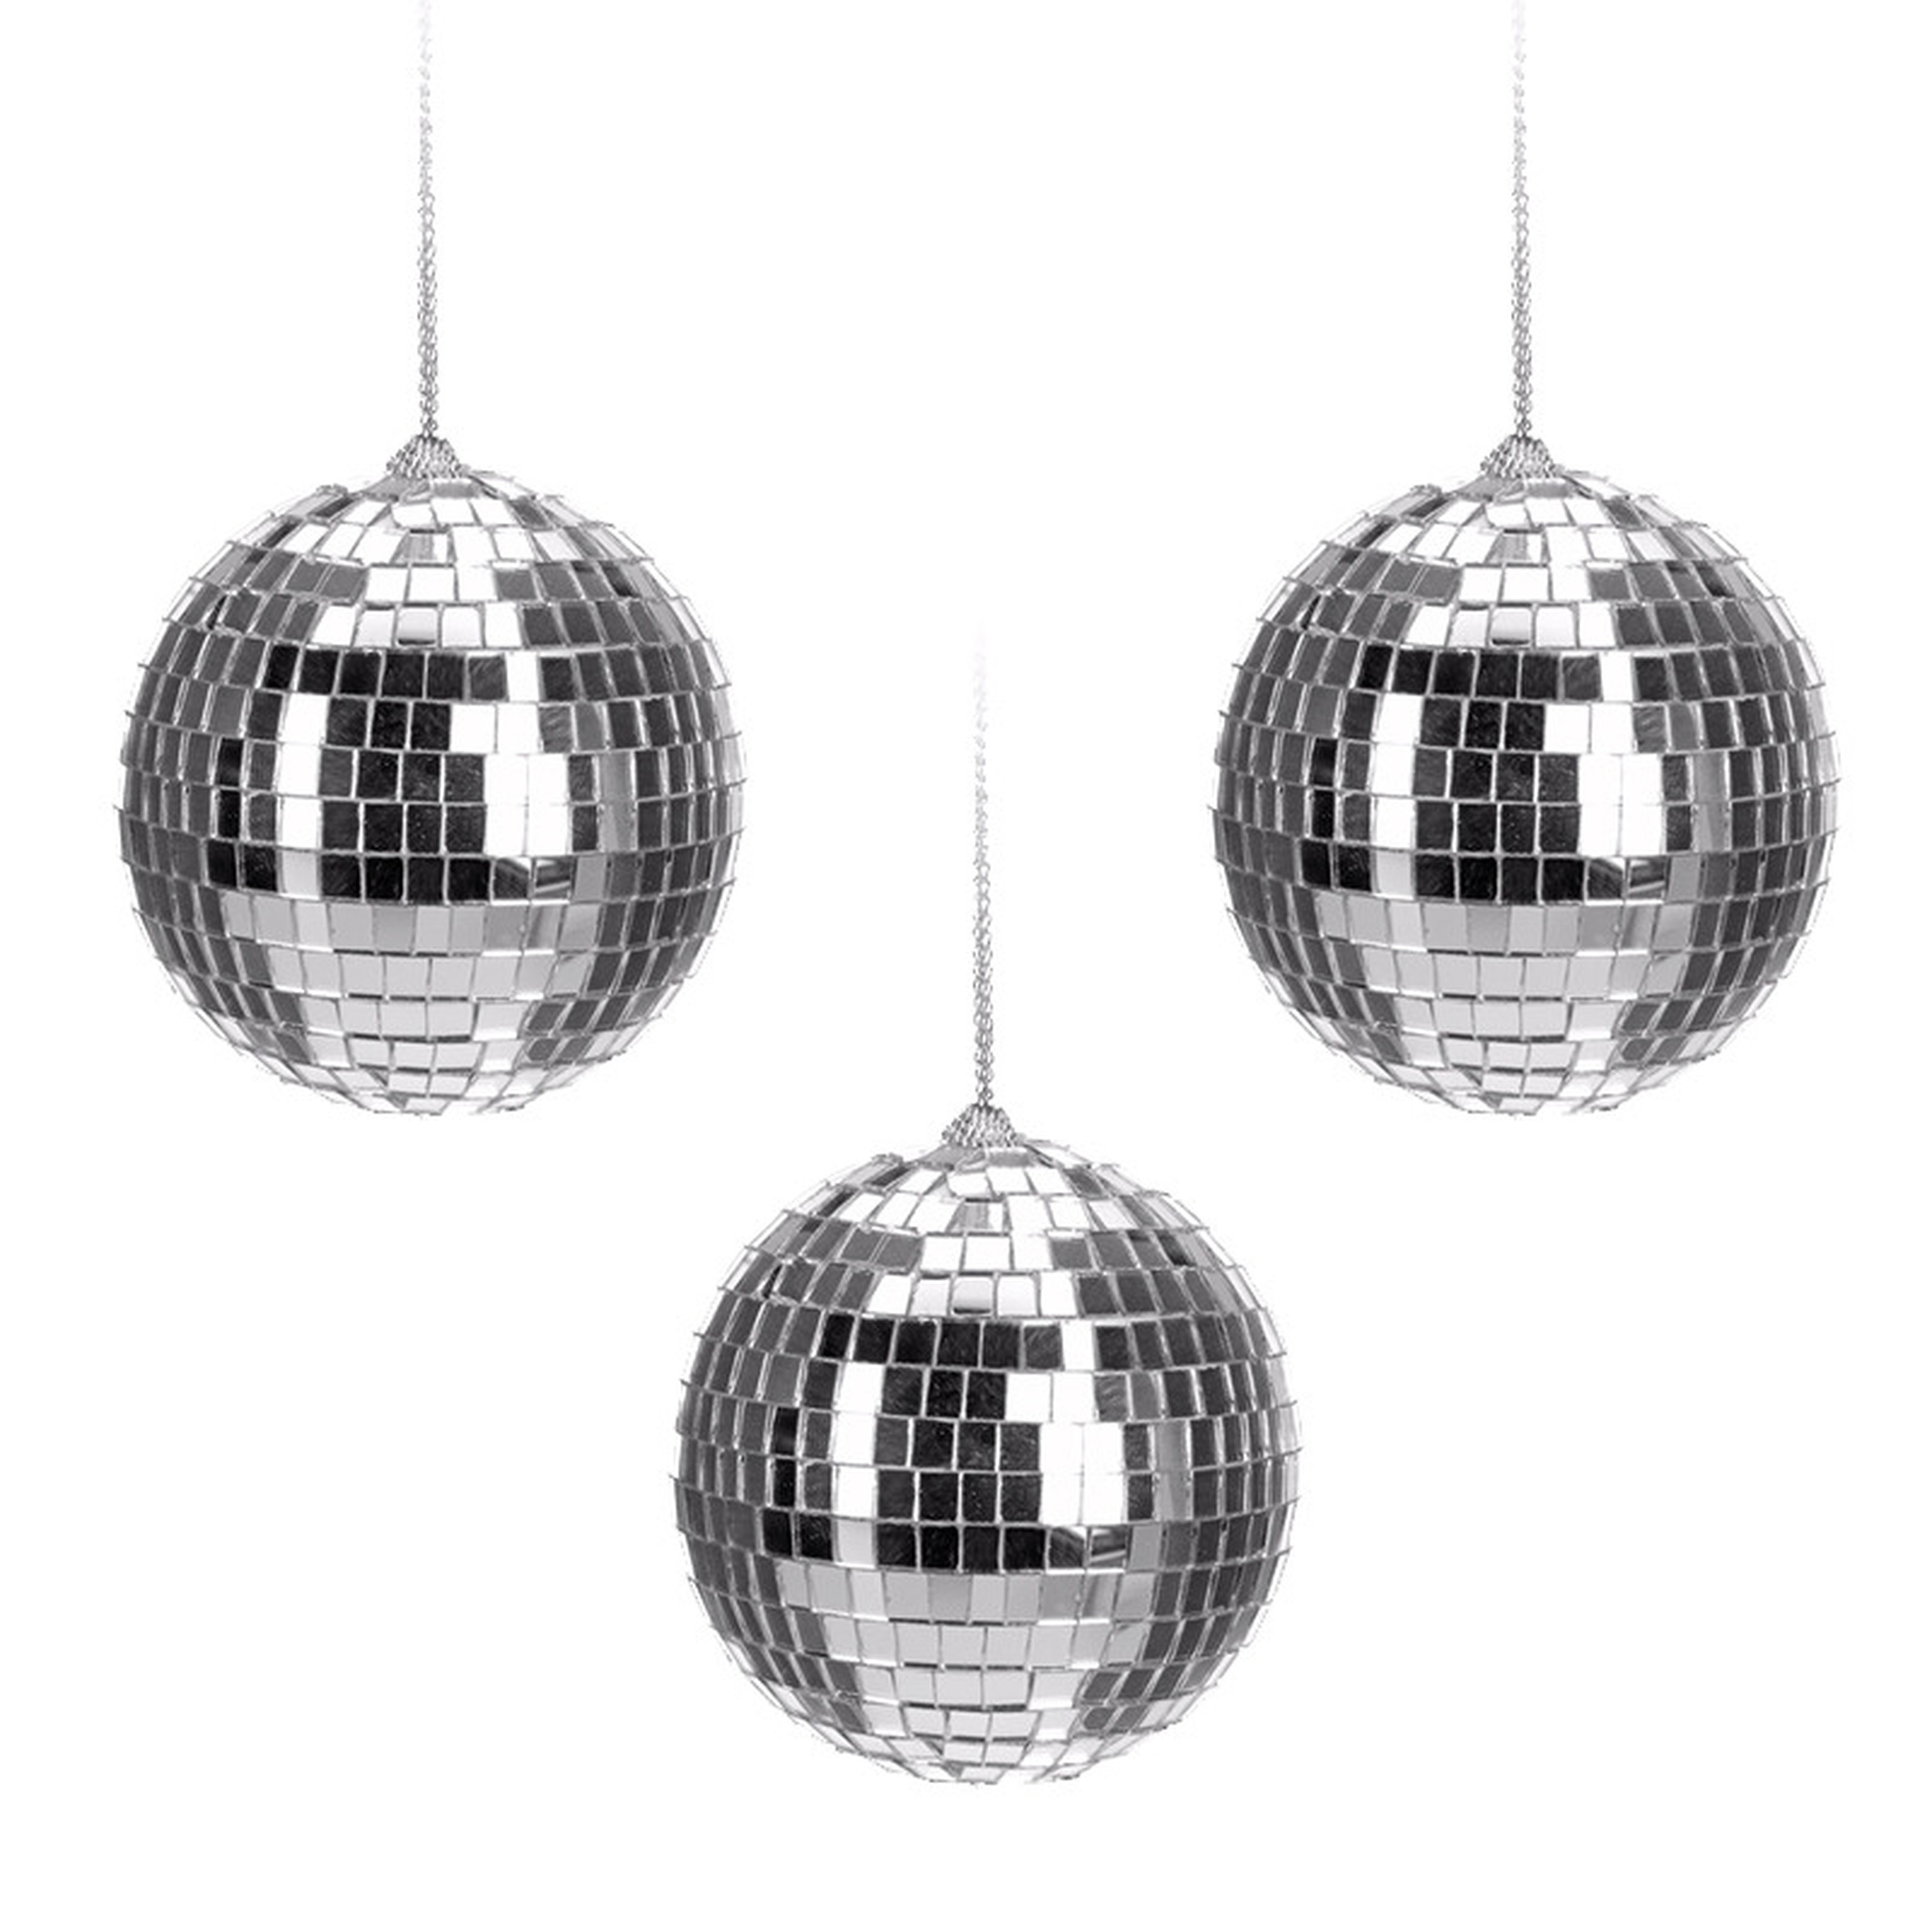 6x Kerstballen discoballen-discobollen zilver 6 cm